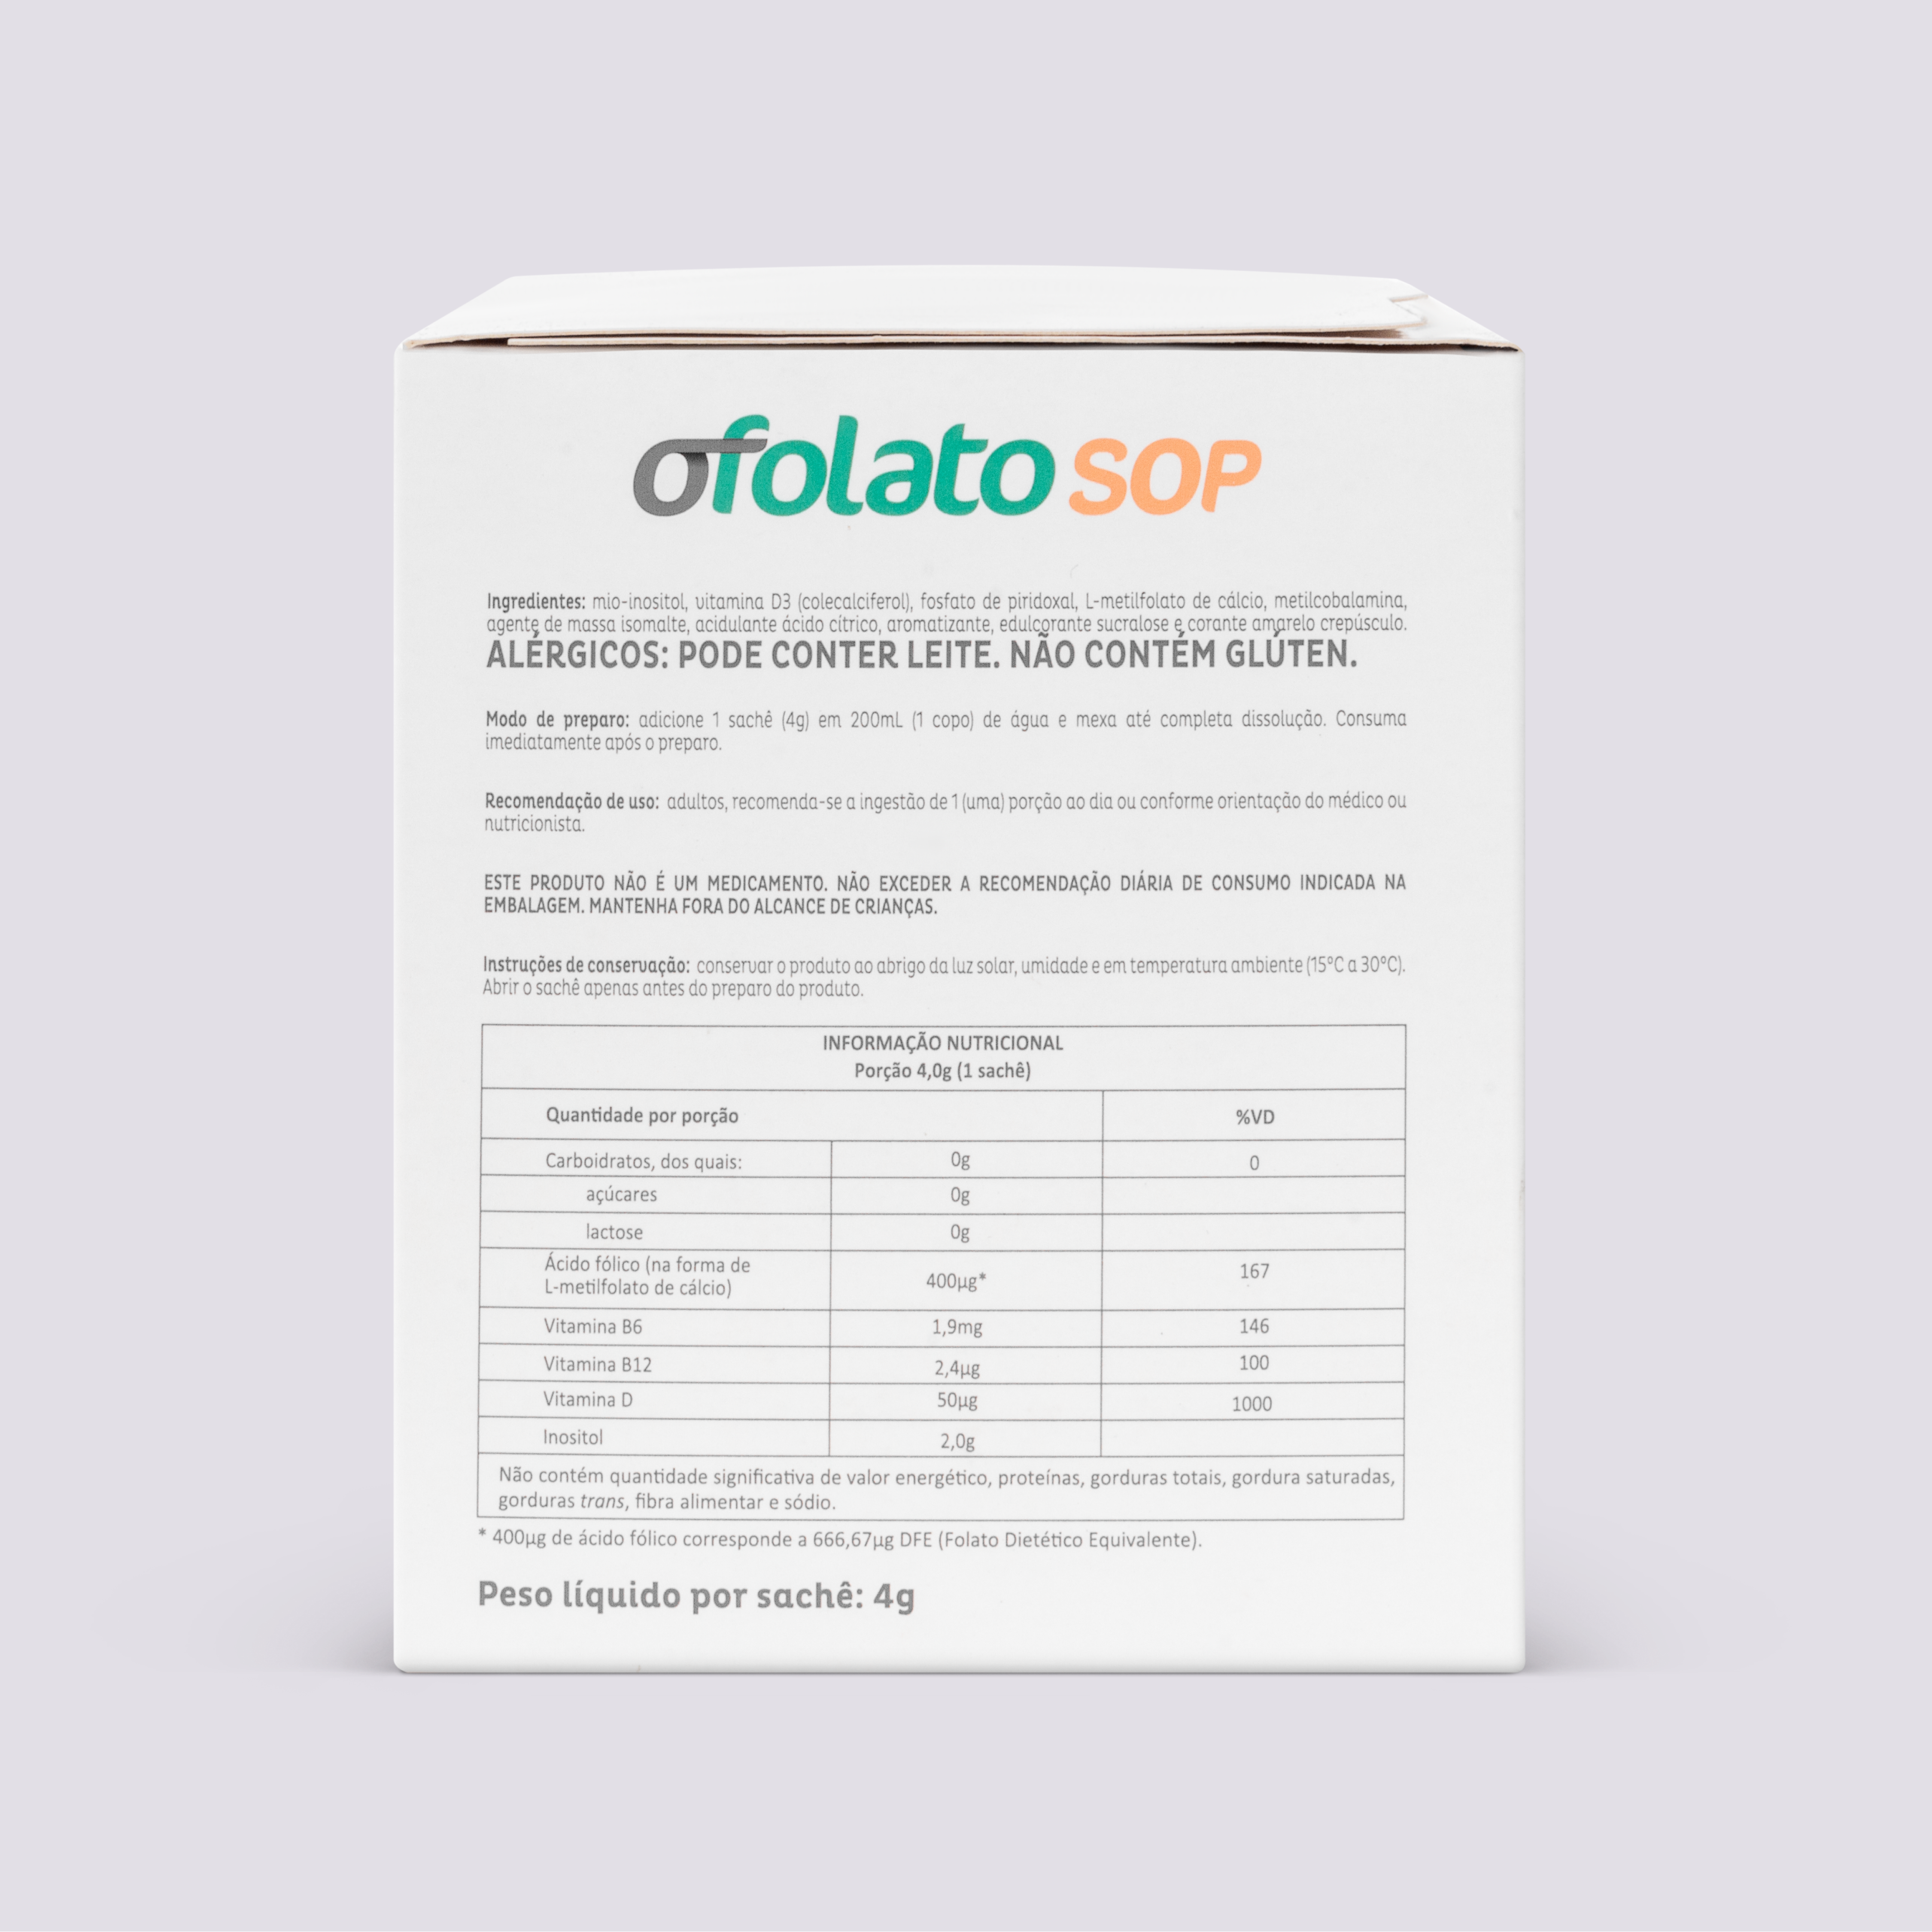 Ofolato SOP - Mio-Inositol com Ácido Fólico